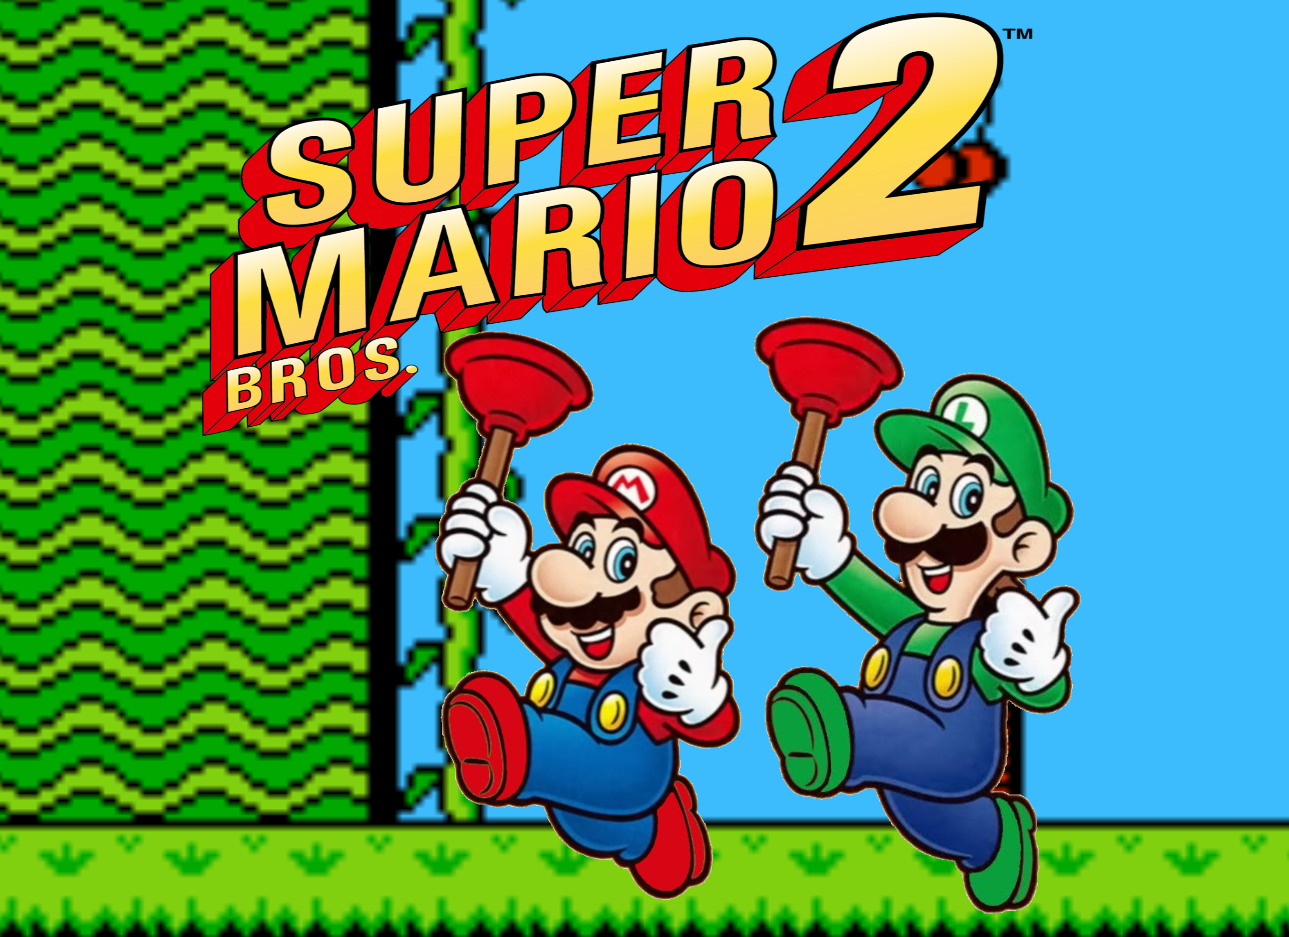 Super Mario 2 PT-BR Boxarts by BMatSantos on DeviantArt